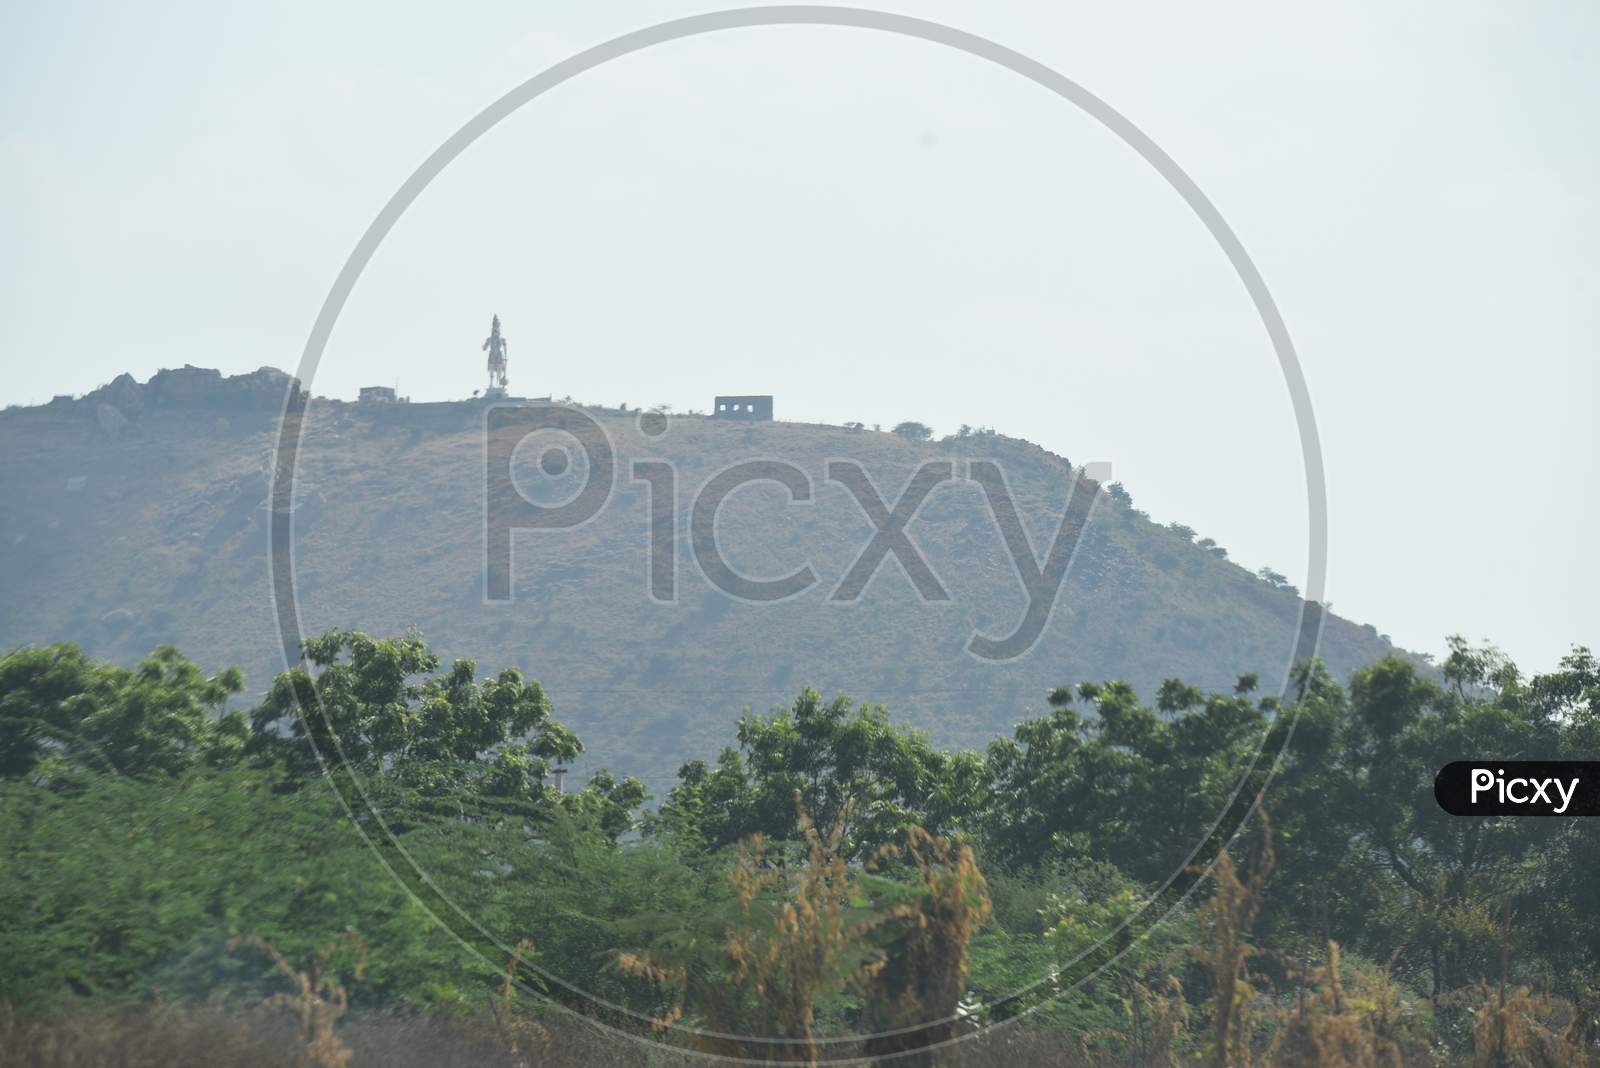 Lord Hanuman Statue On a Hill